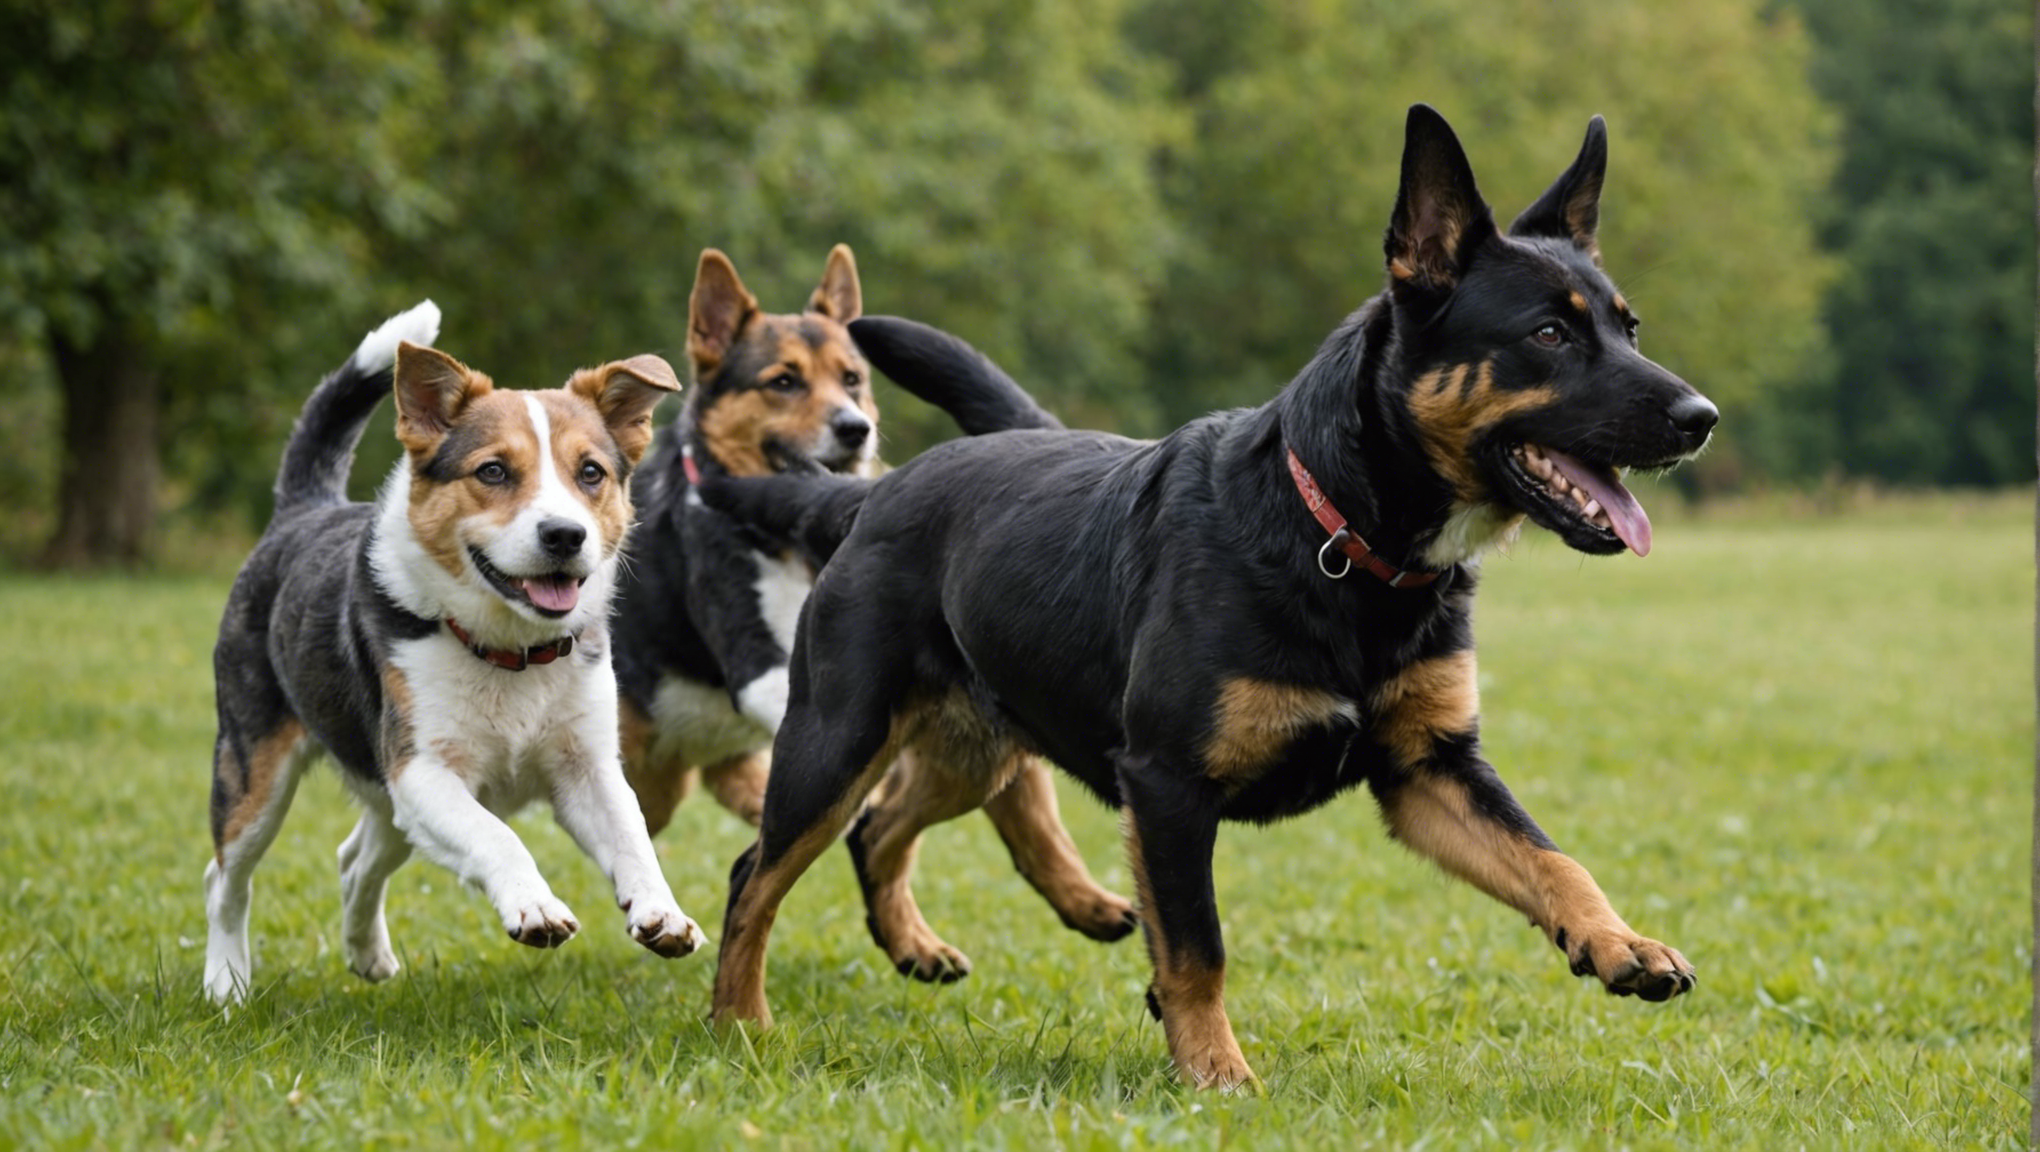 découvrez nos conseils pour choisir la formation idéale pour votre chien de catégorie 2 et assurez-vous de son bien-être et de sa sécurité.